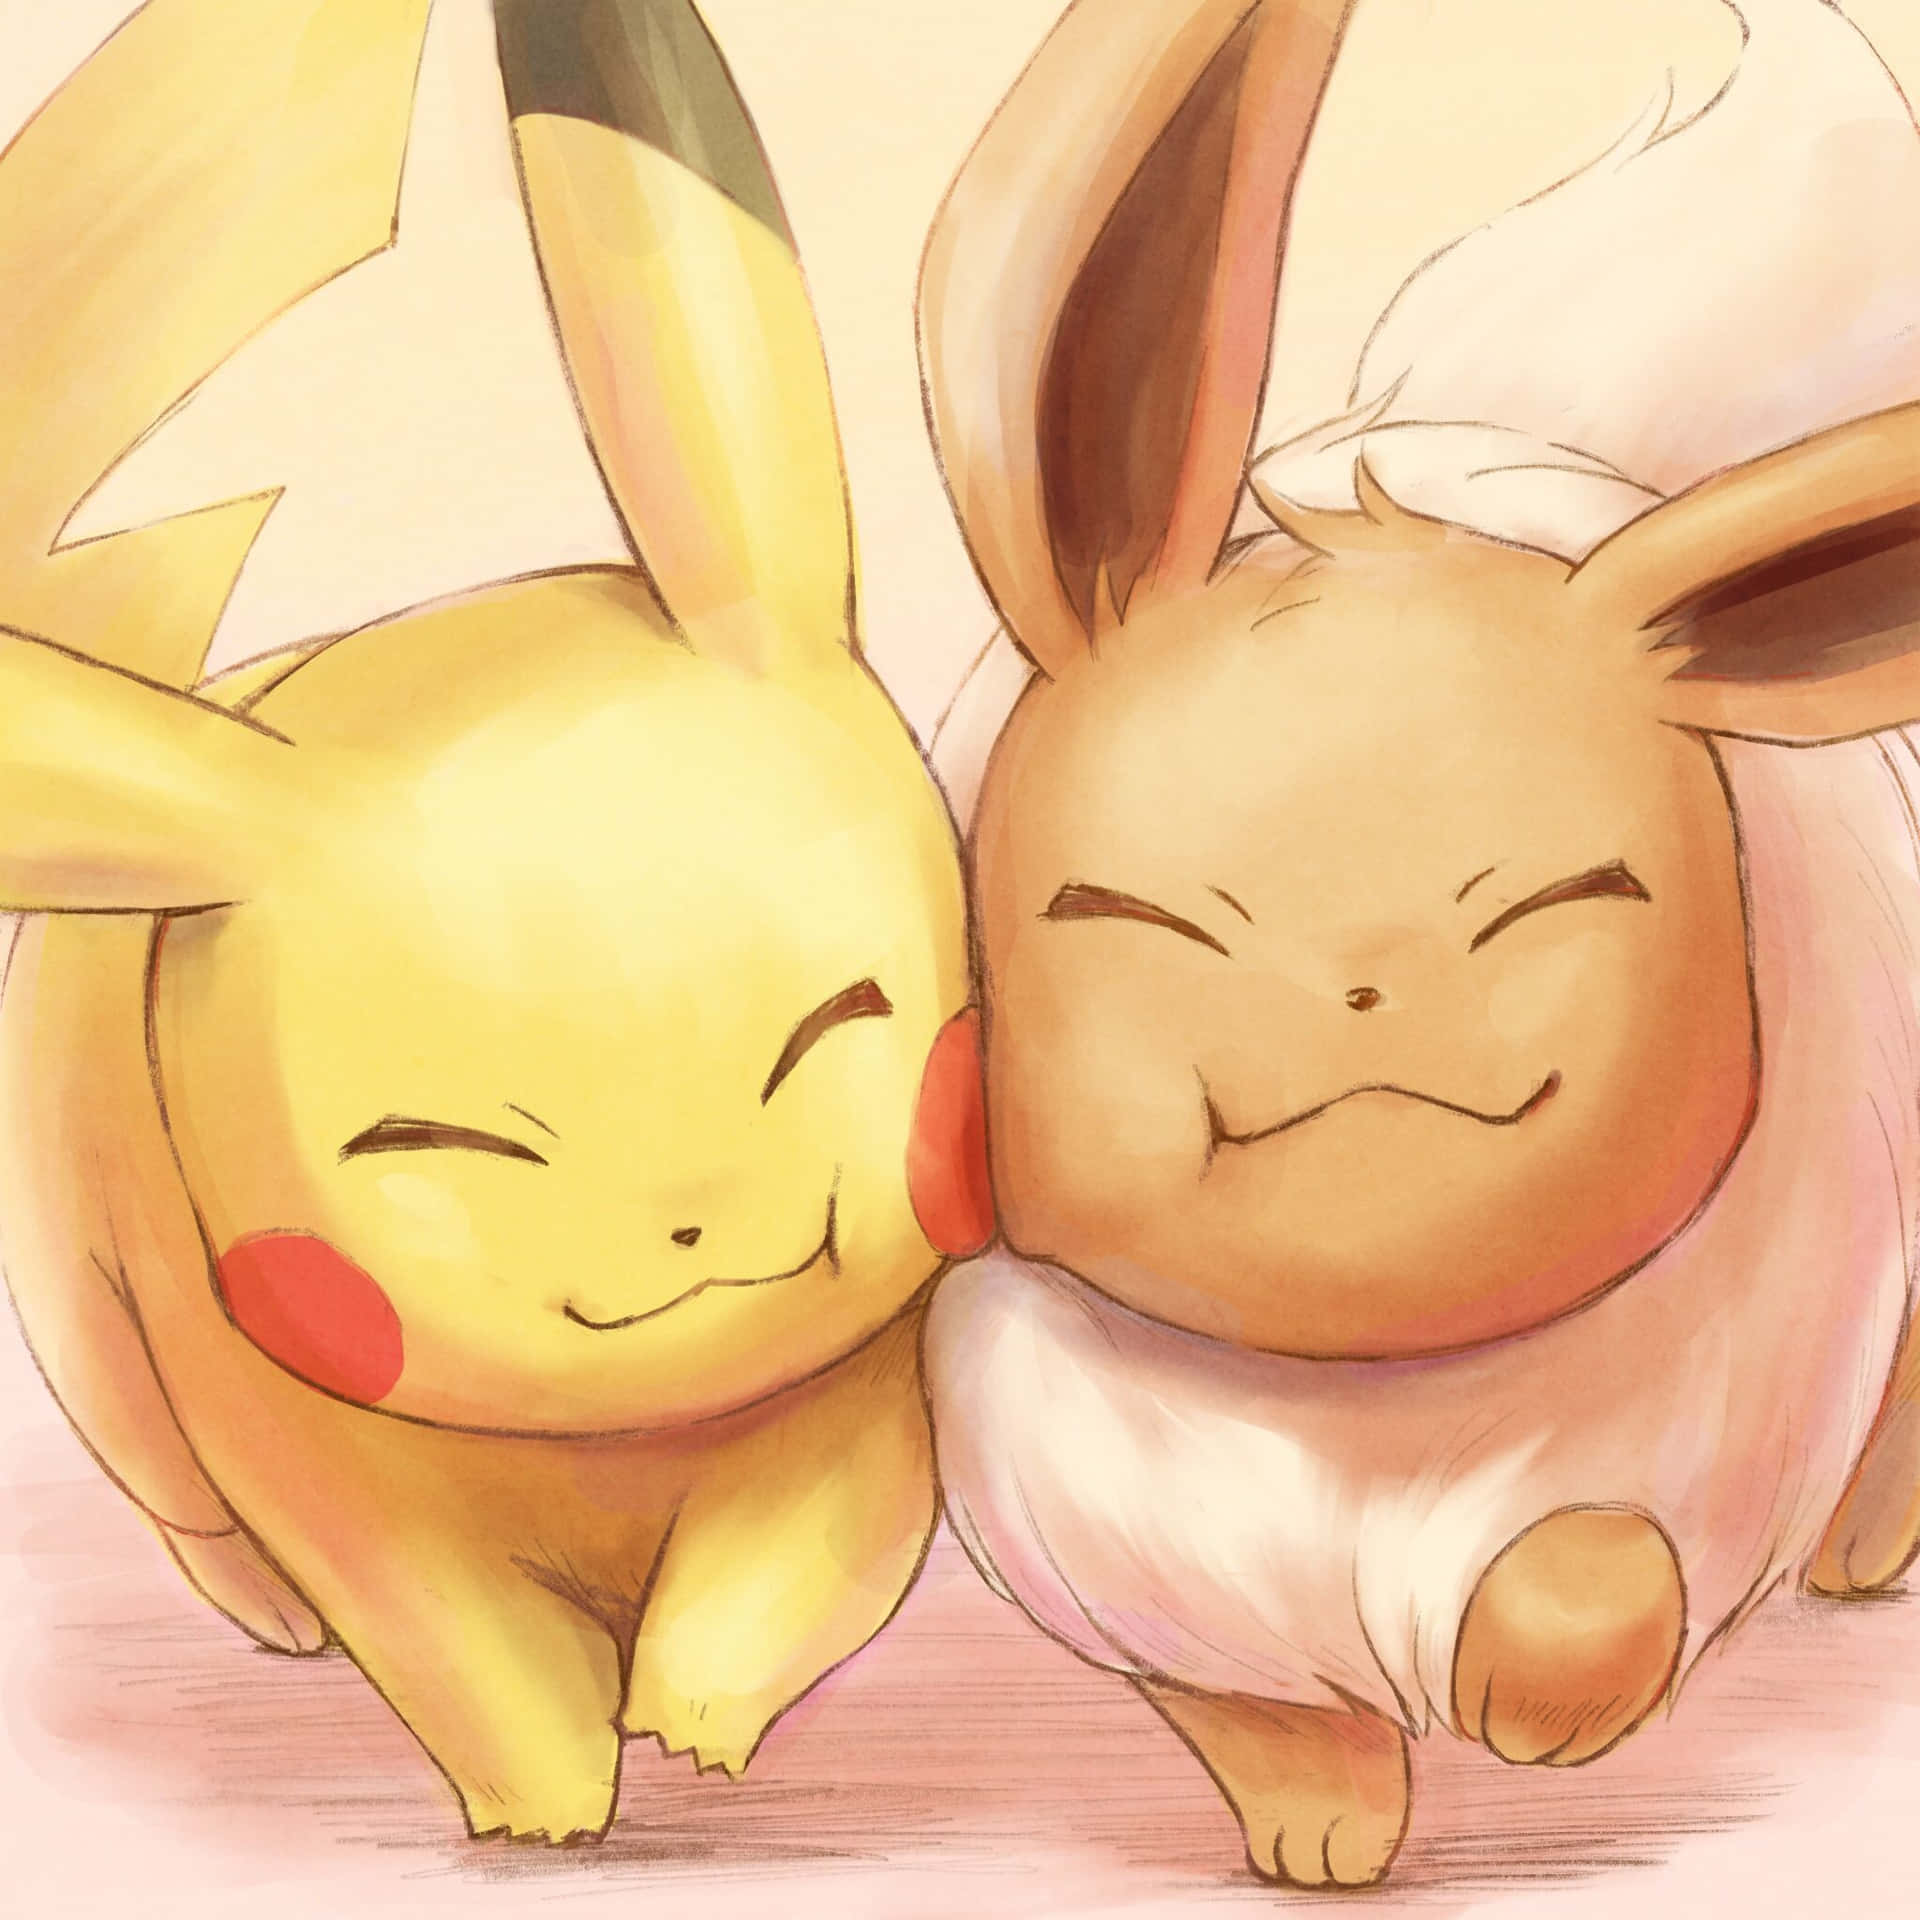 pikachu and eevee love